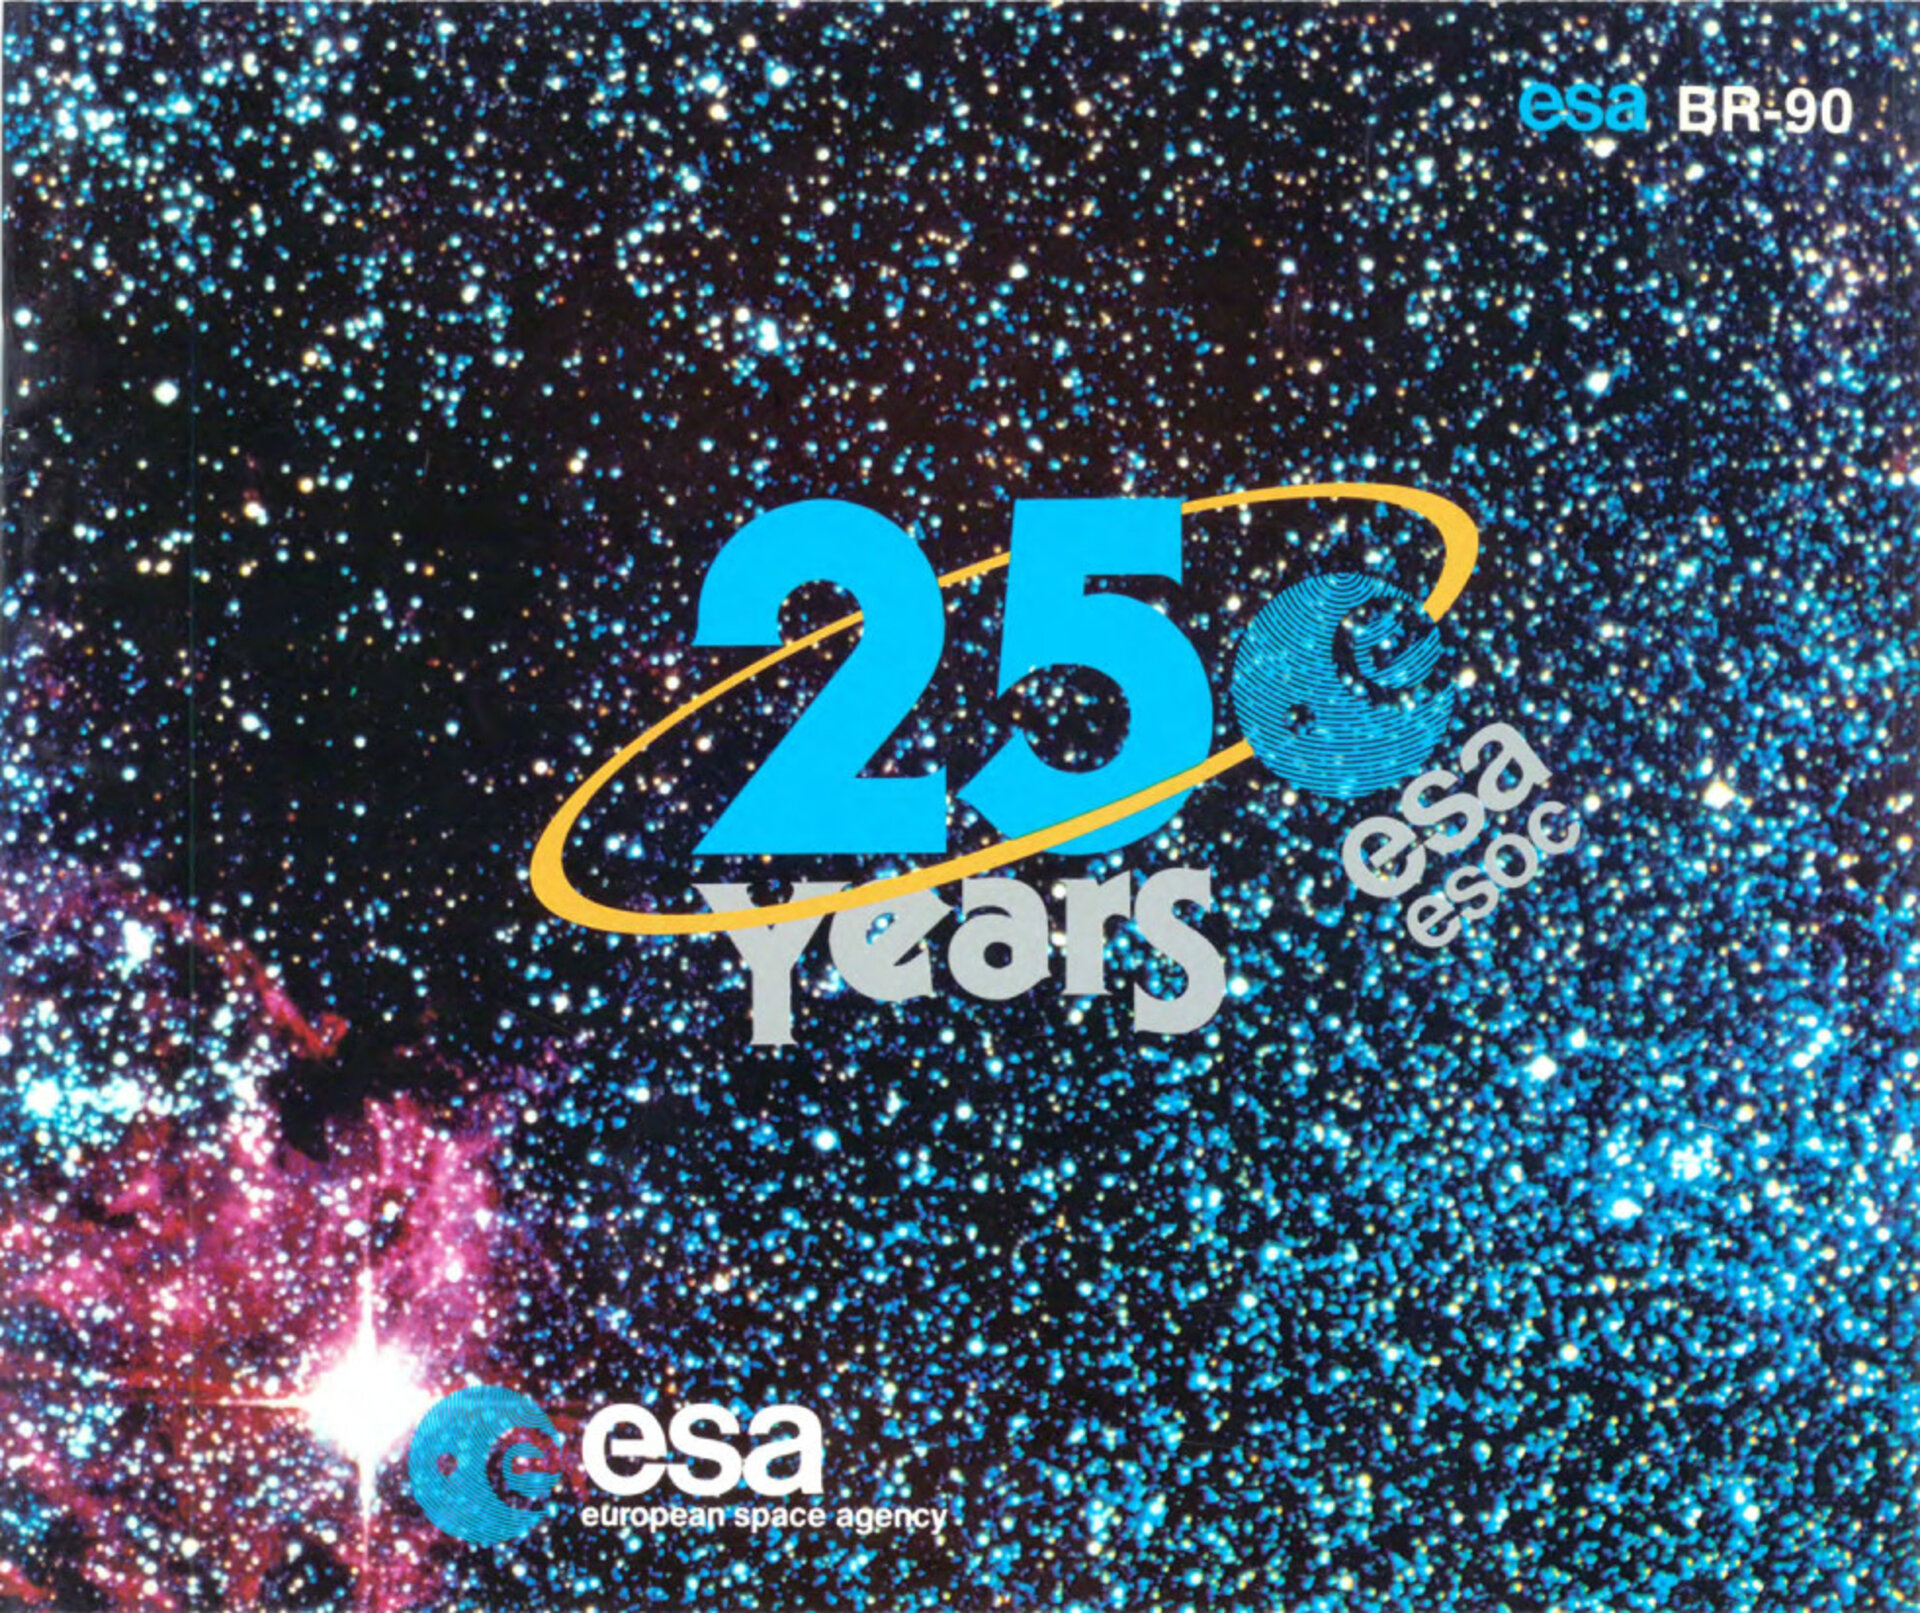 ESA BR-090 25 years of ESOC